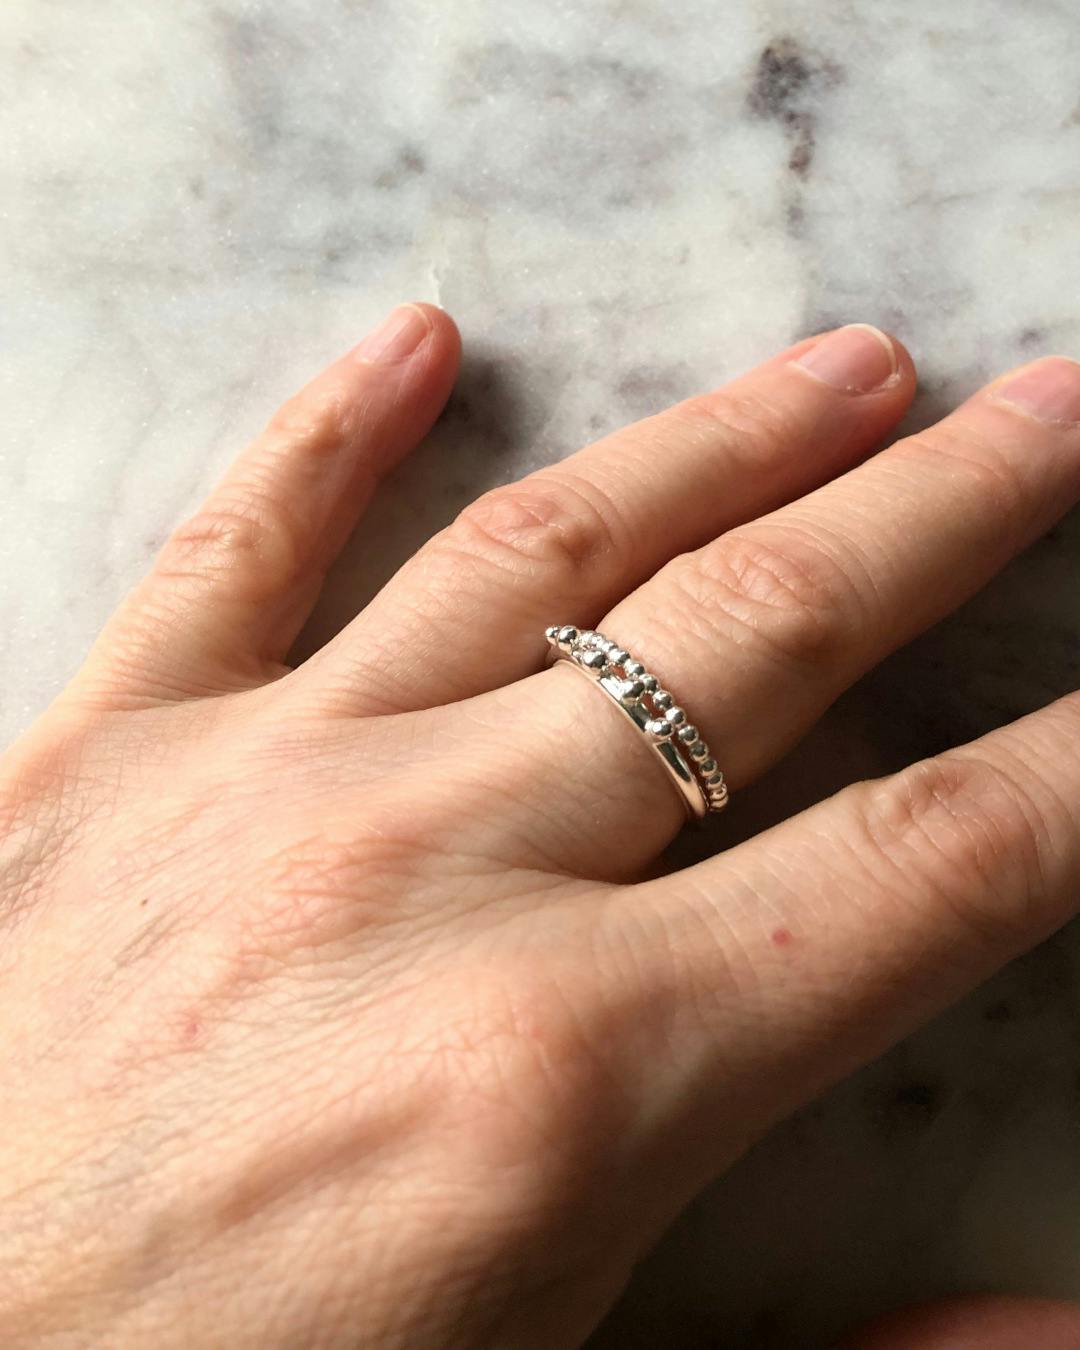 Handgjord kulformad ring i silver. Bilden visar ringen på en hand.